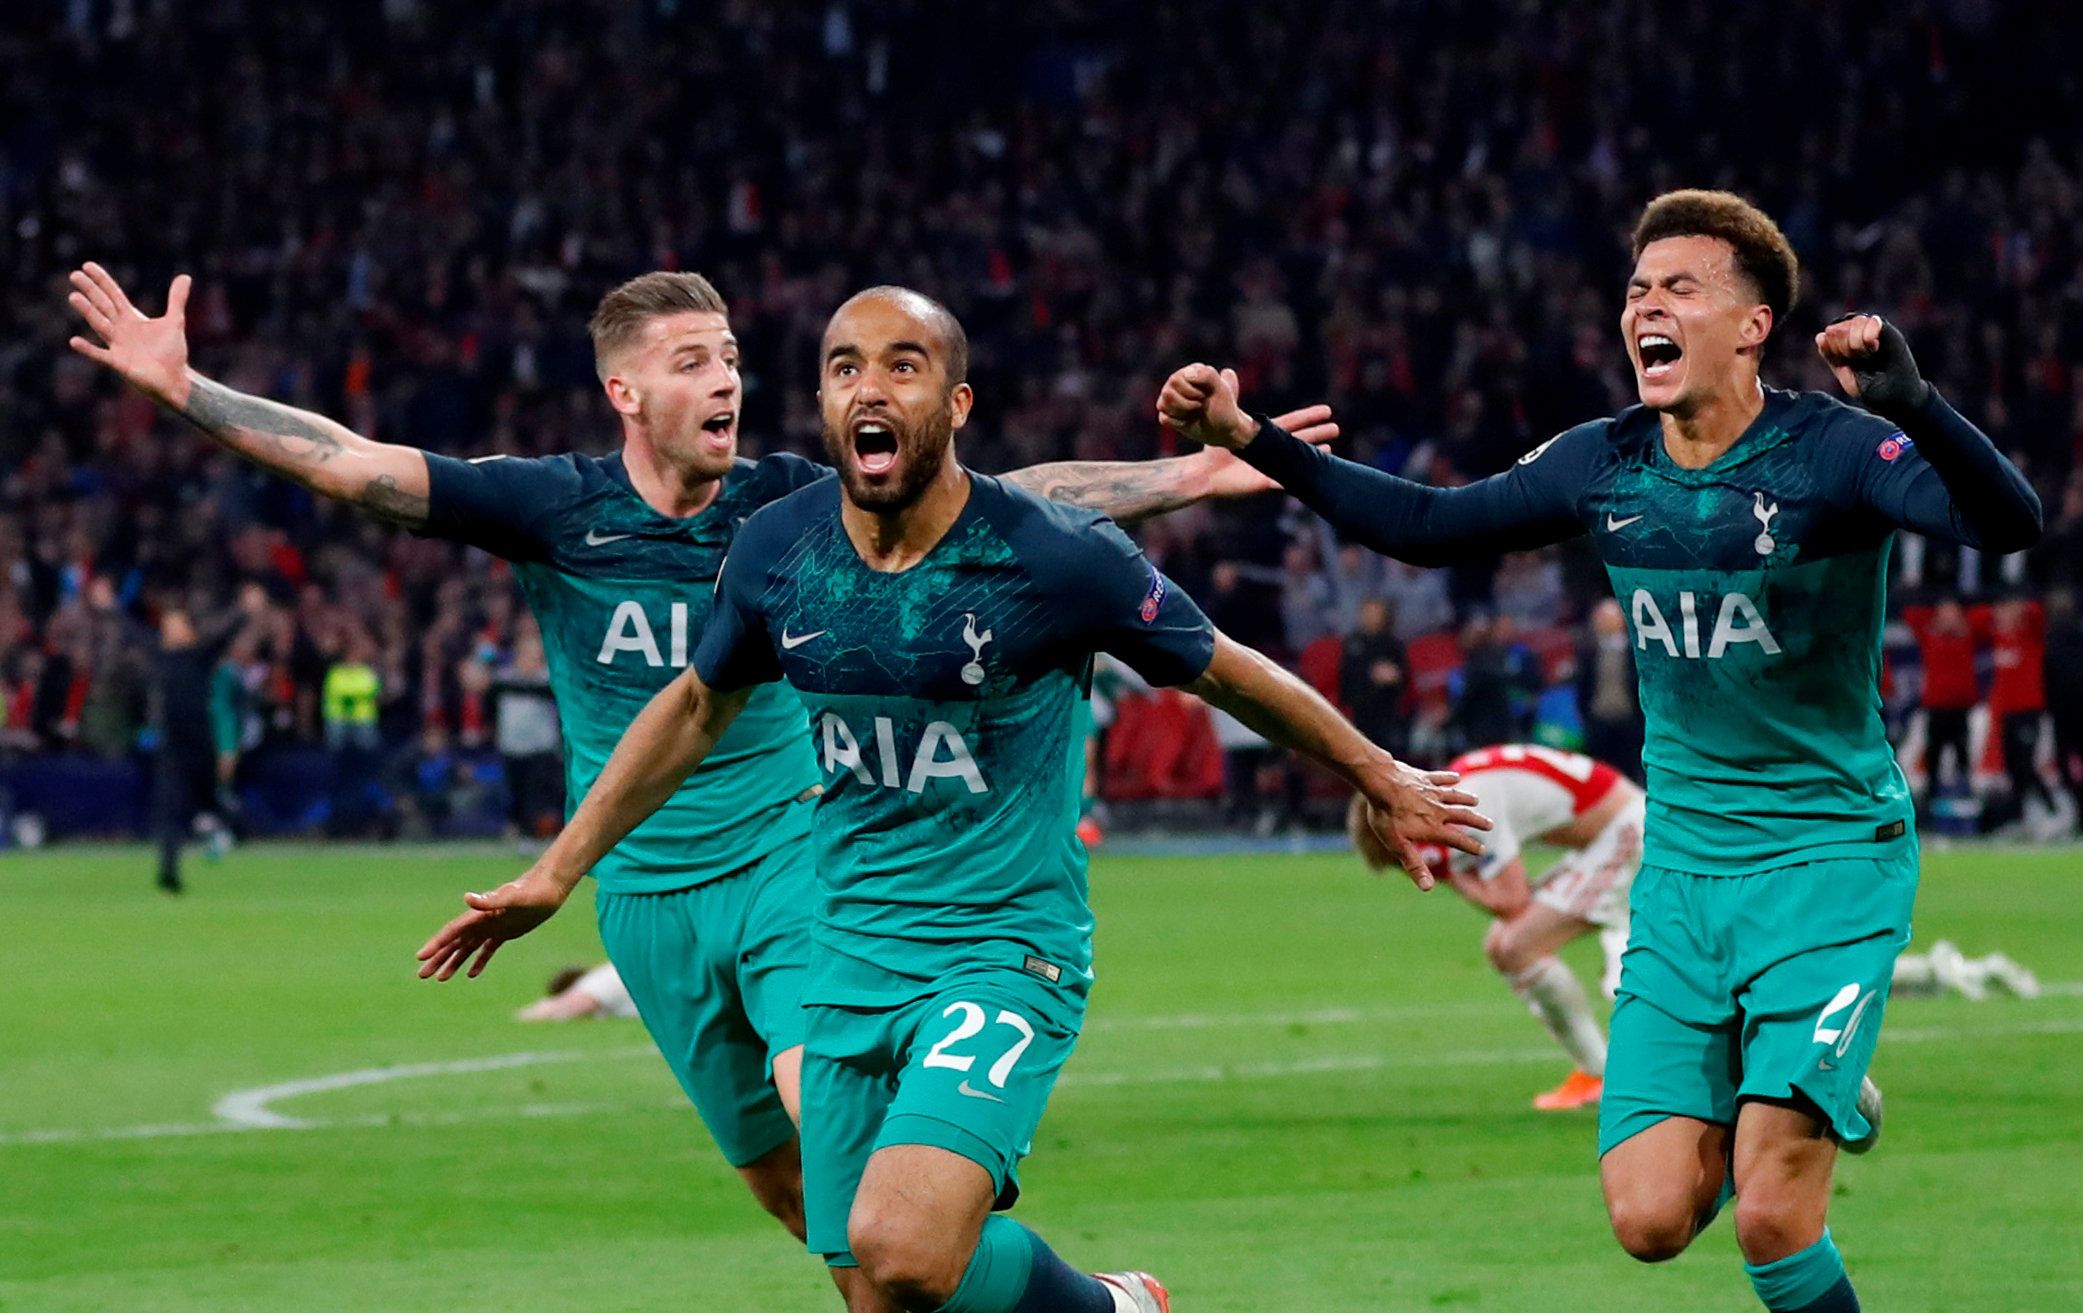 Tottenham Hotspur's Lucas Moura celebrates scoring against Ajax in the Champions League